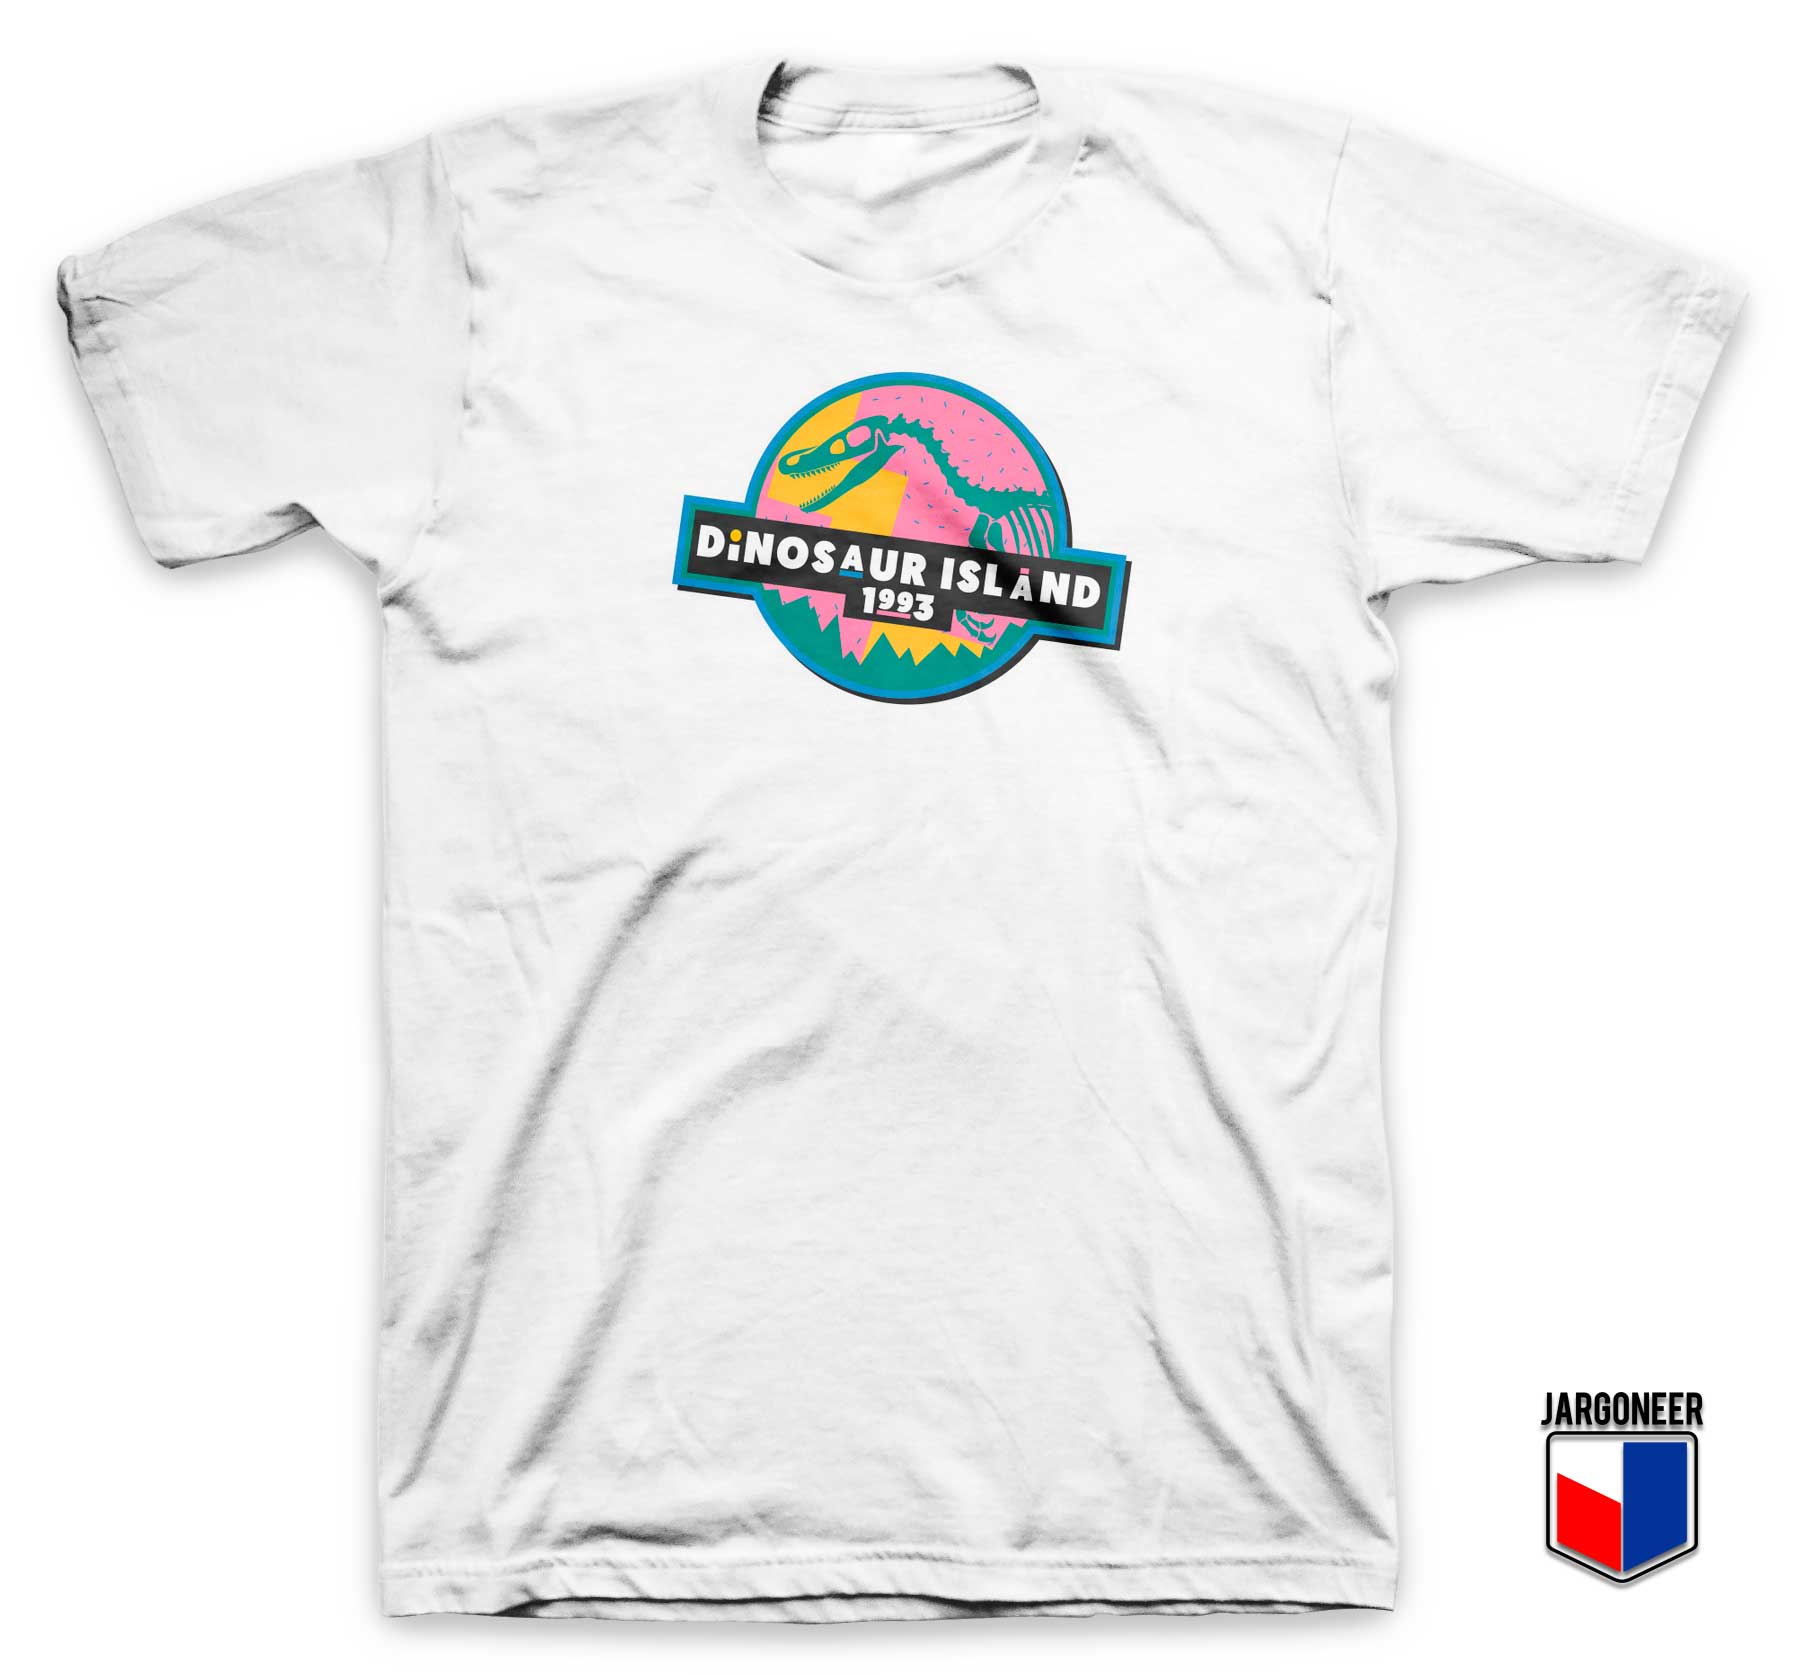 Dinosaur Island 1993 T Shirt - Shop Unique Graphic Cool Shirt Designs